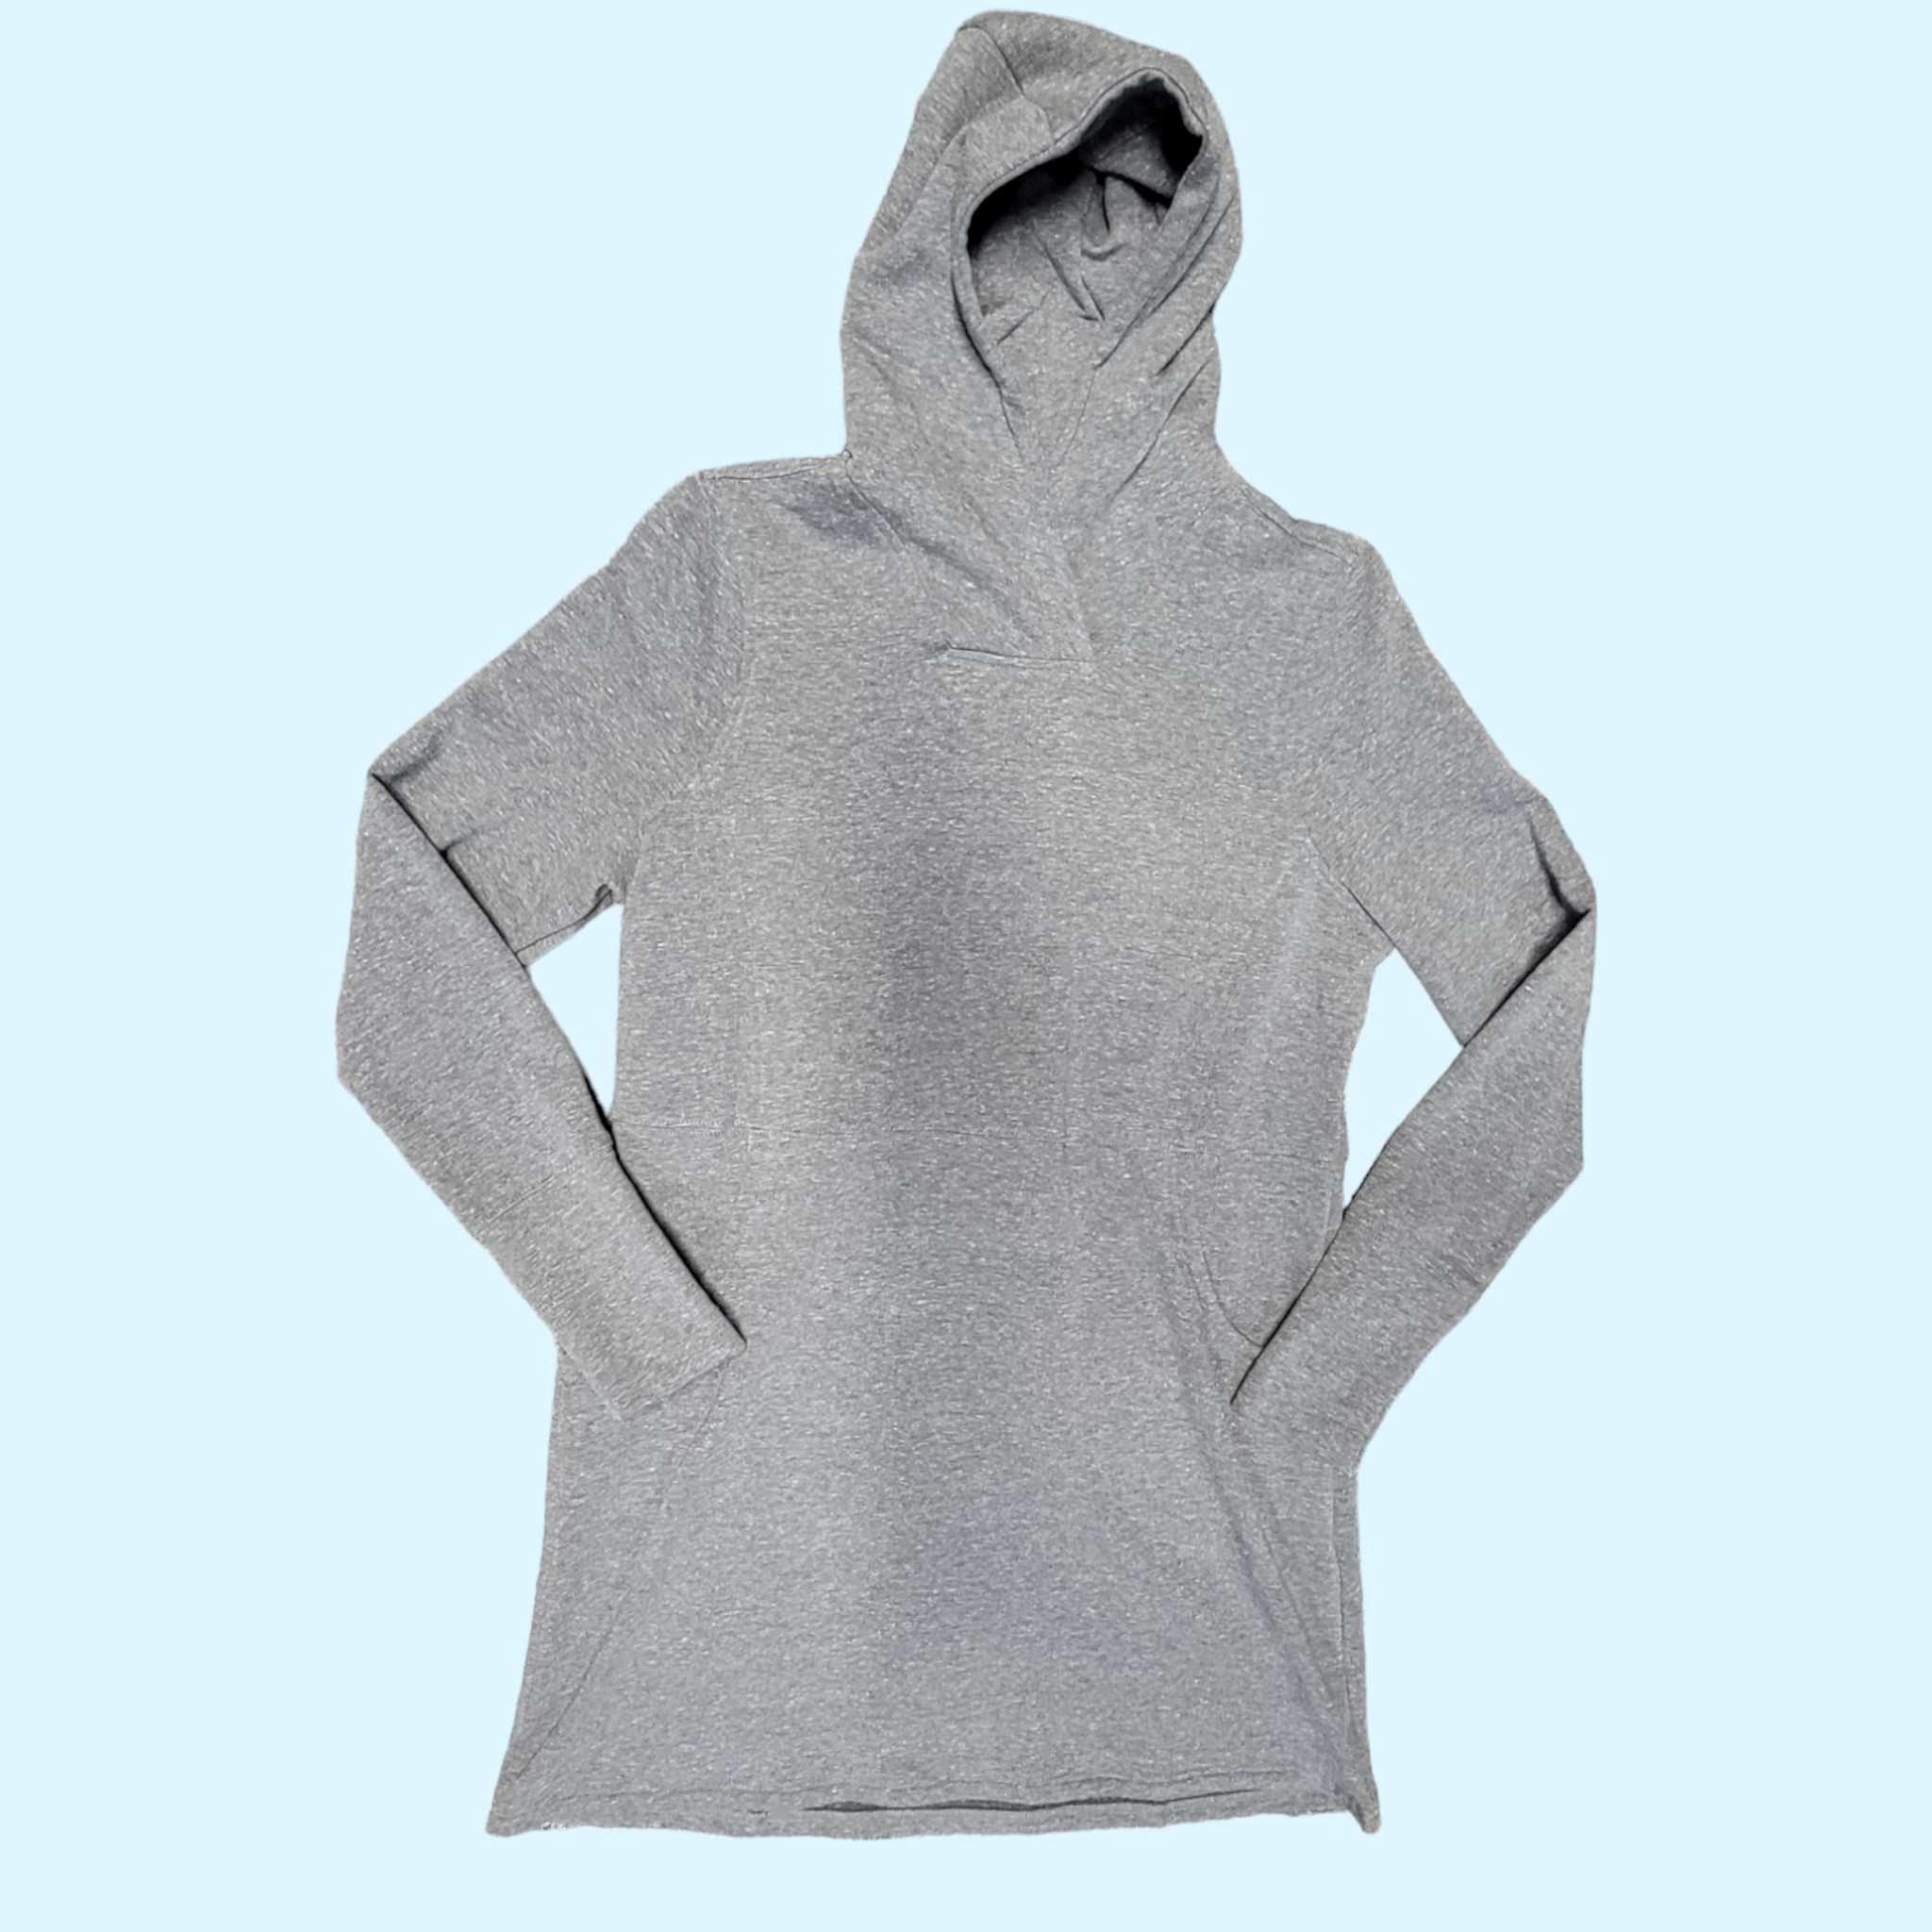 EQL By Kerrits Weekender Fleece Hoodie Dress in Gray - Medium NWT